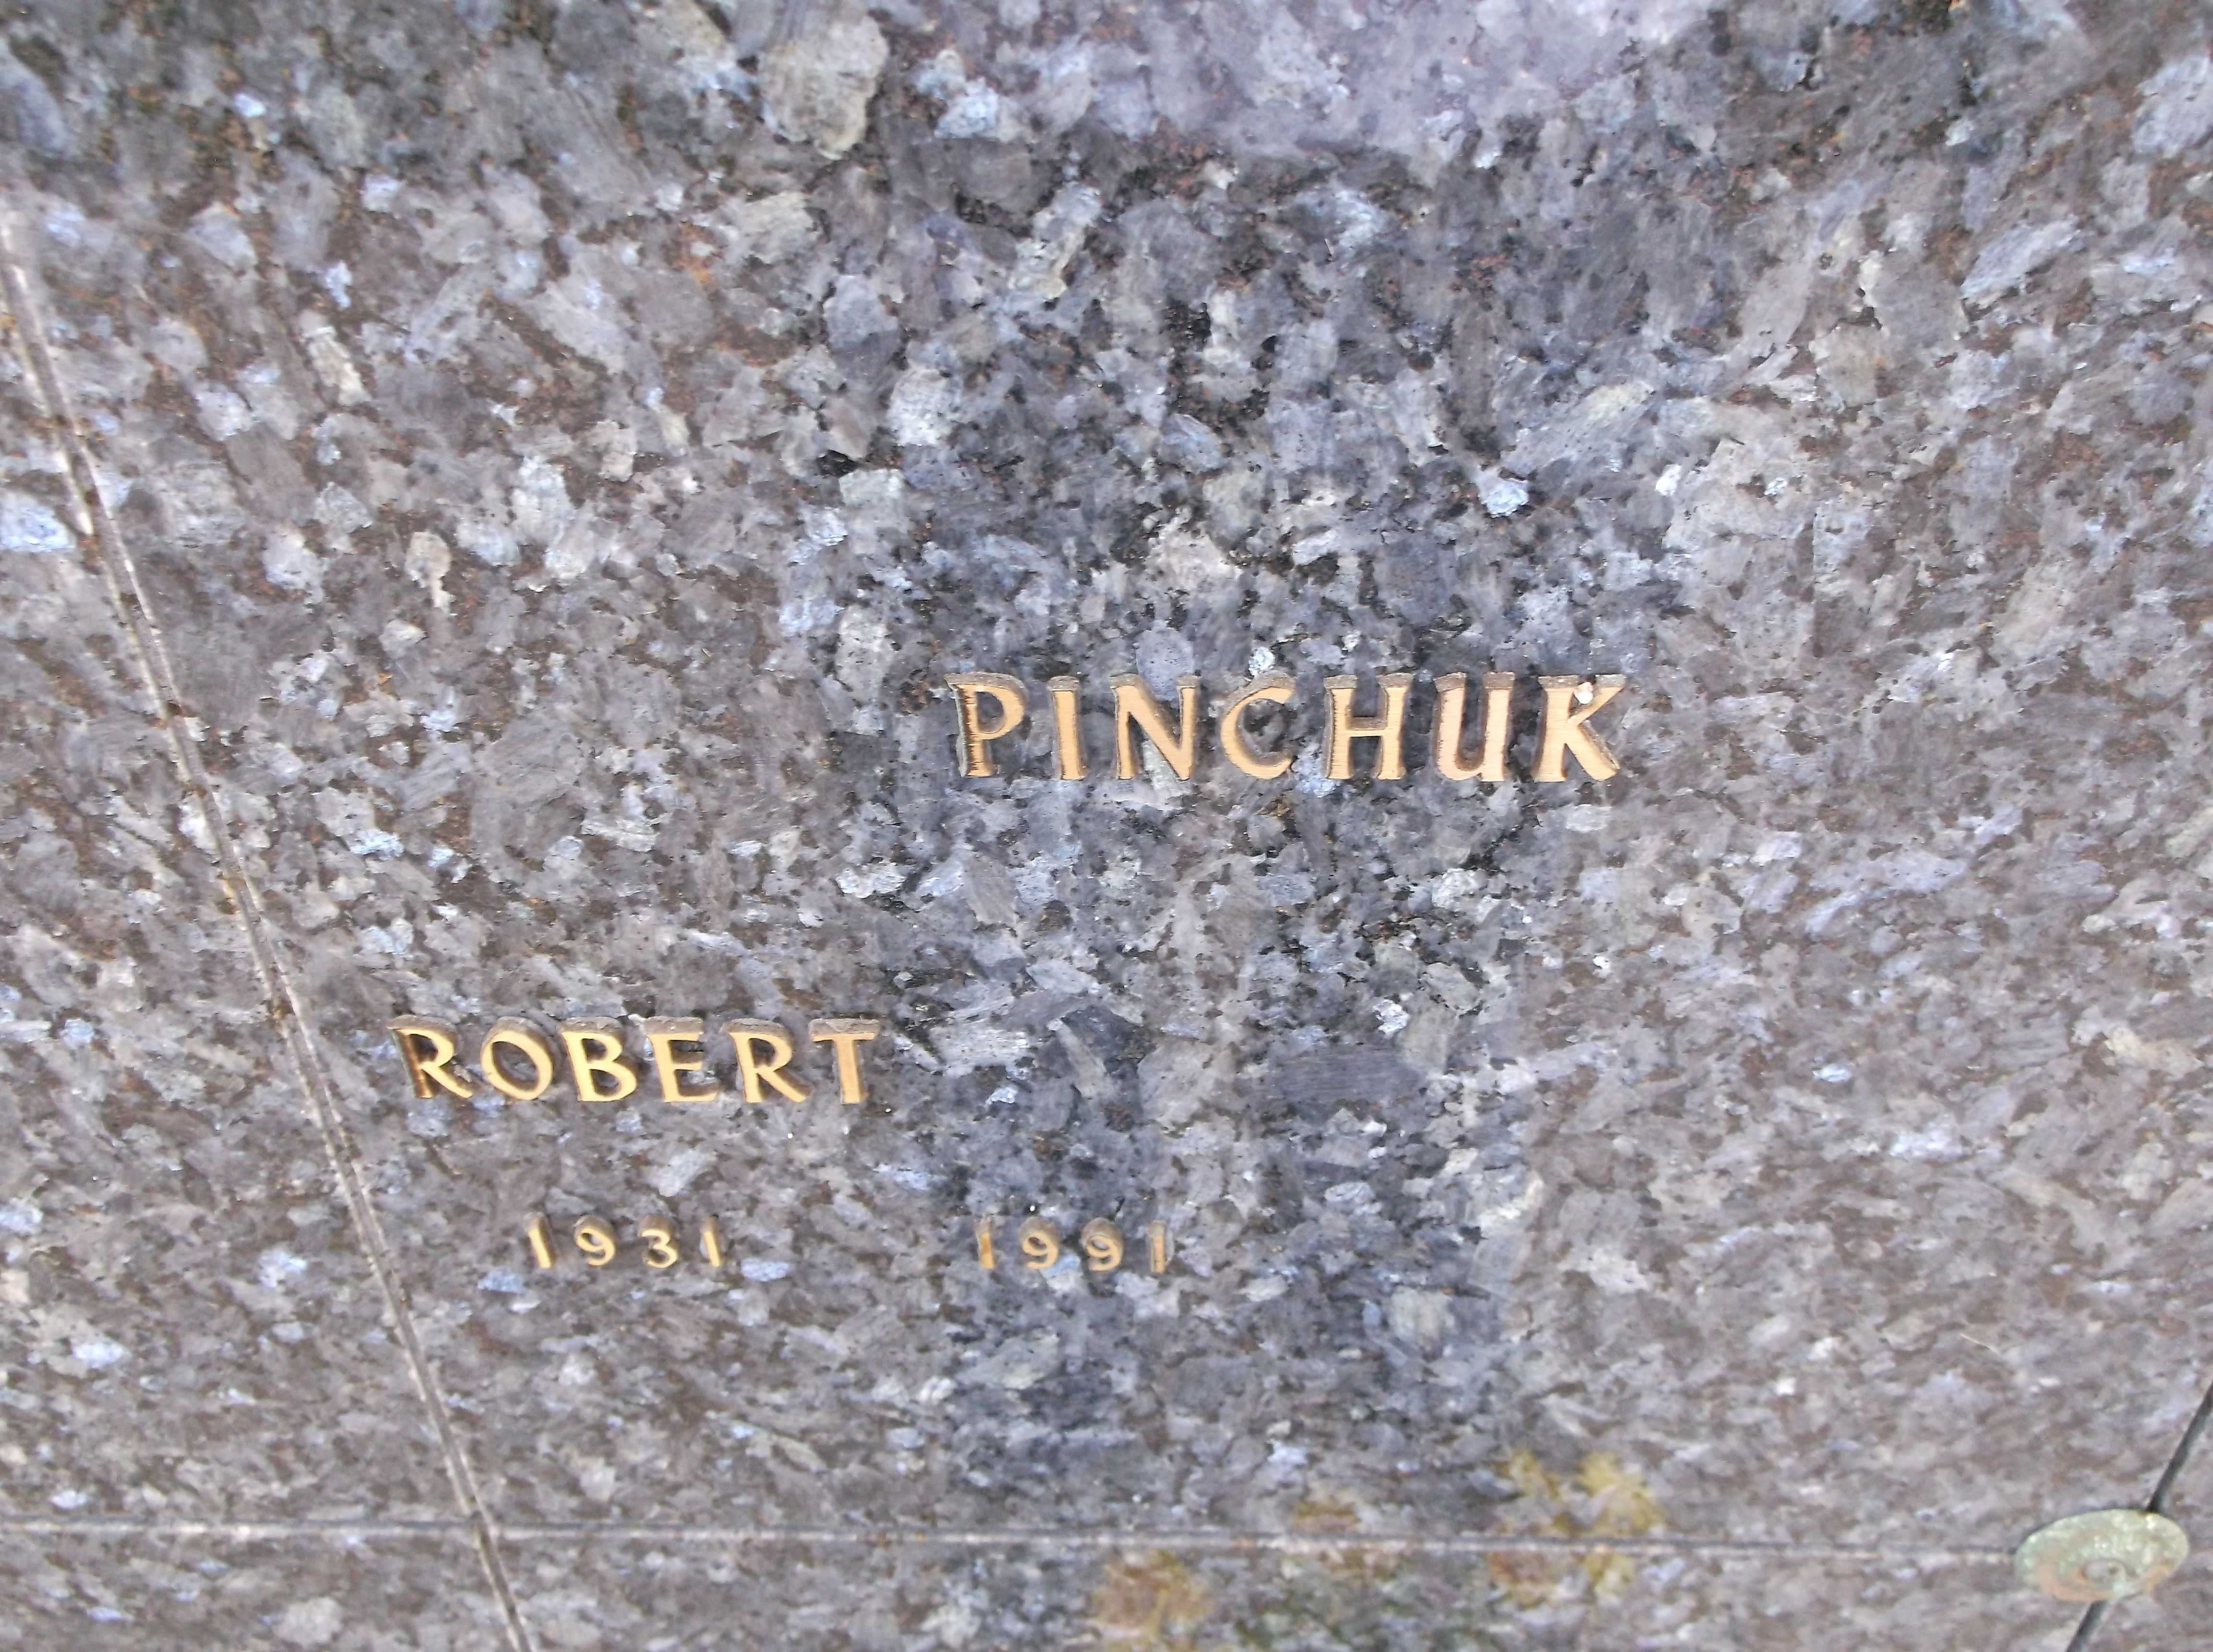 Robert Pinchuk